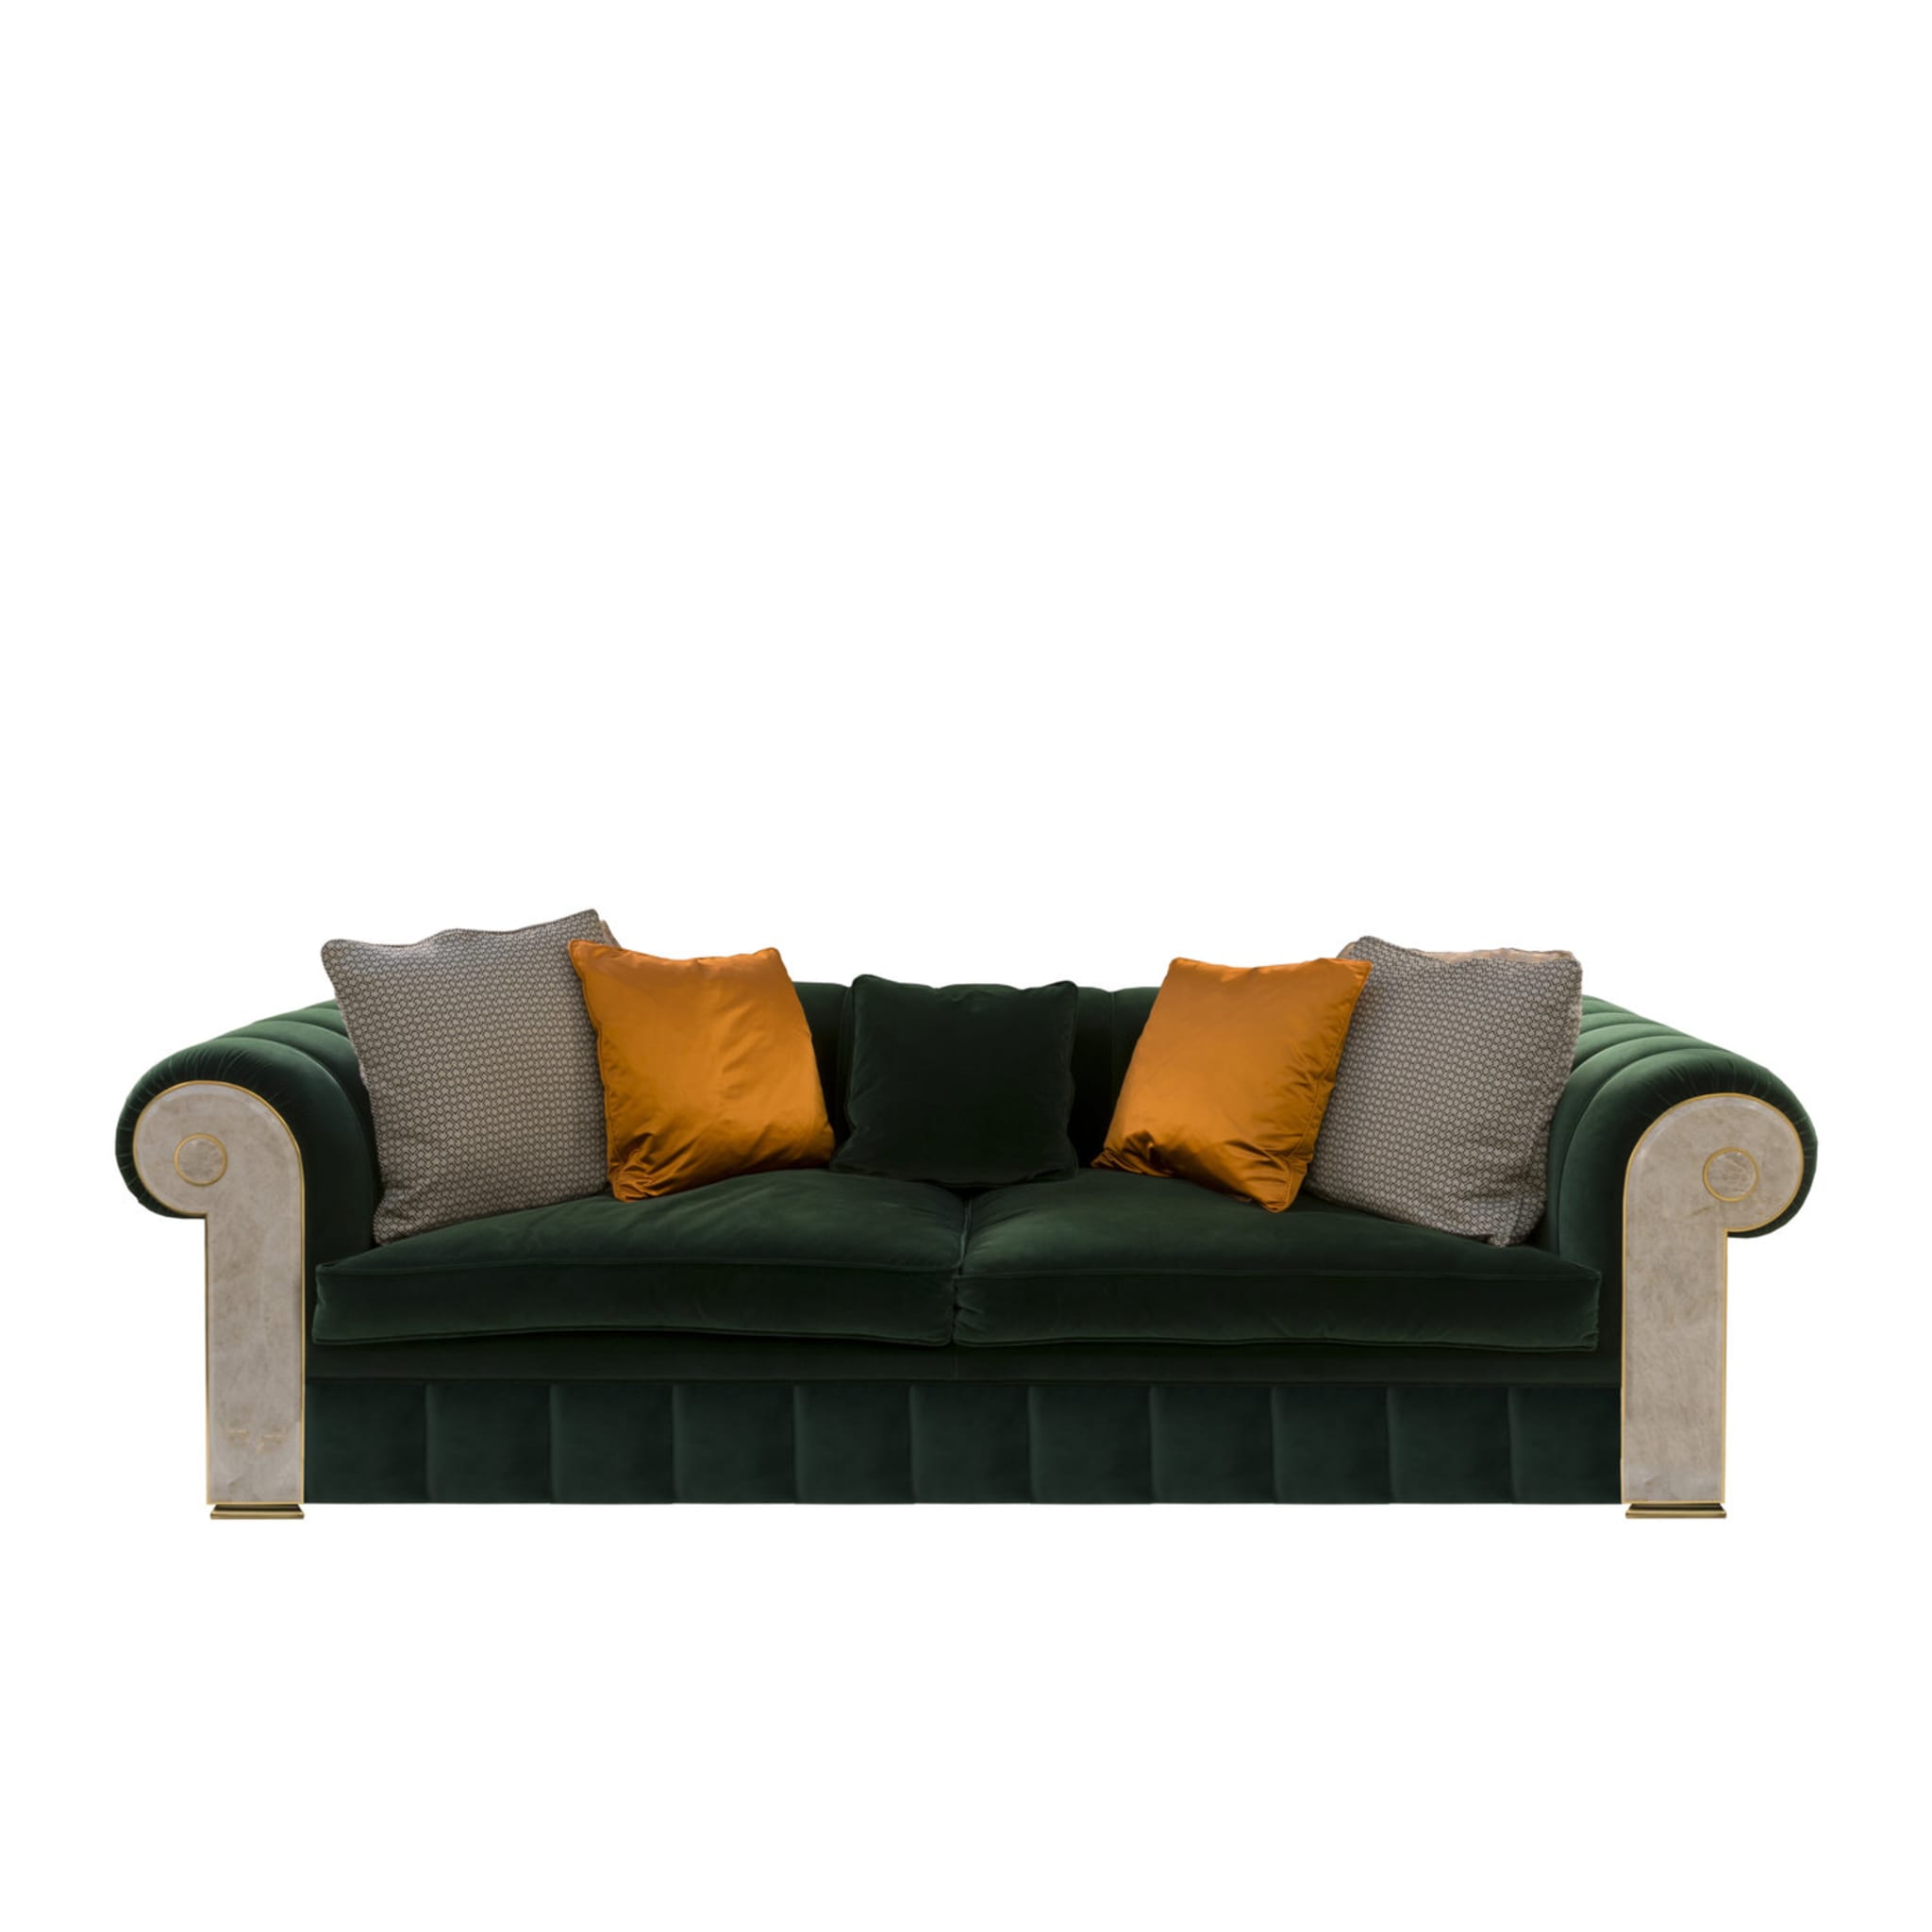 Contemporary classic Sofa #3 - Main view